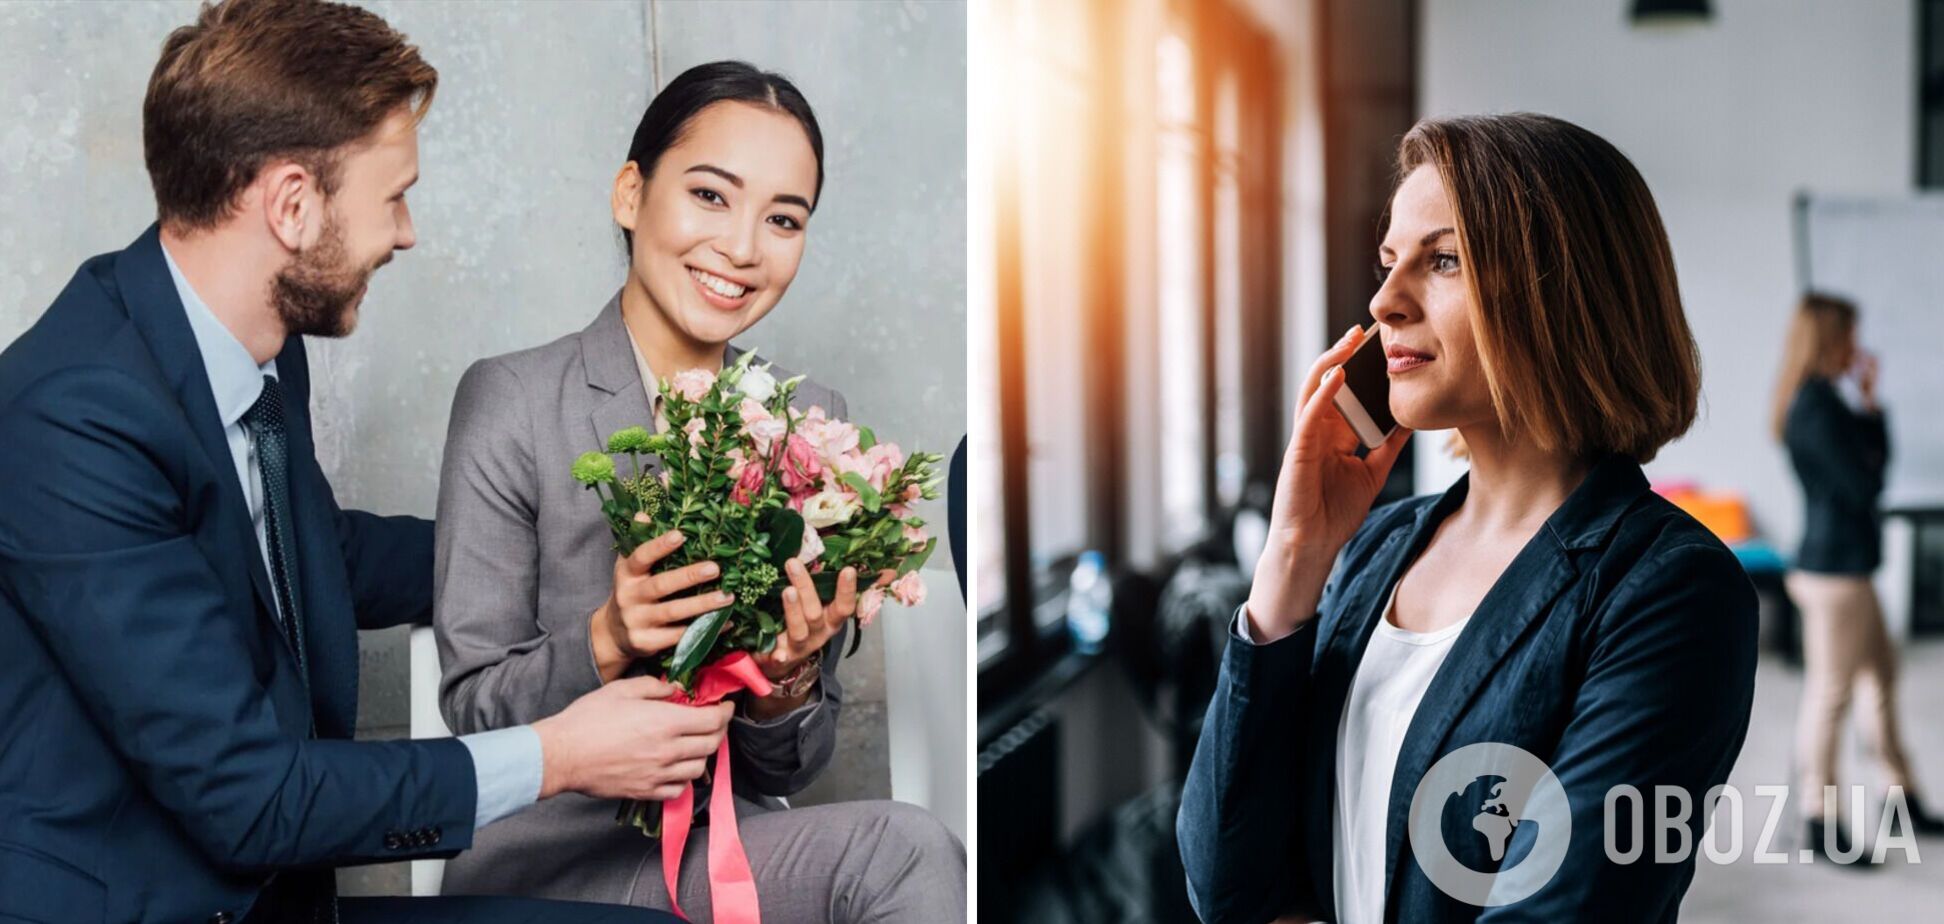 Как поздравить женщин на работе с праздником весны: оригинальные поздравления